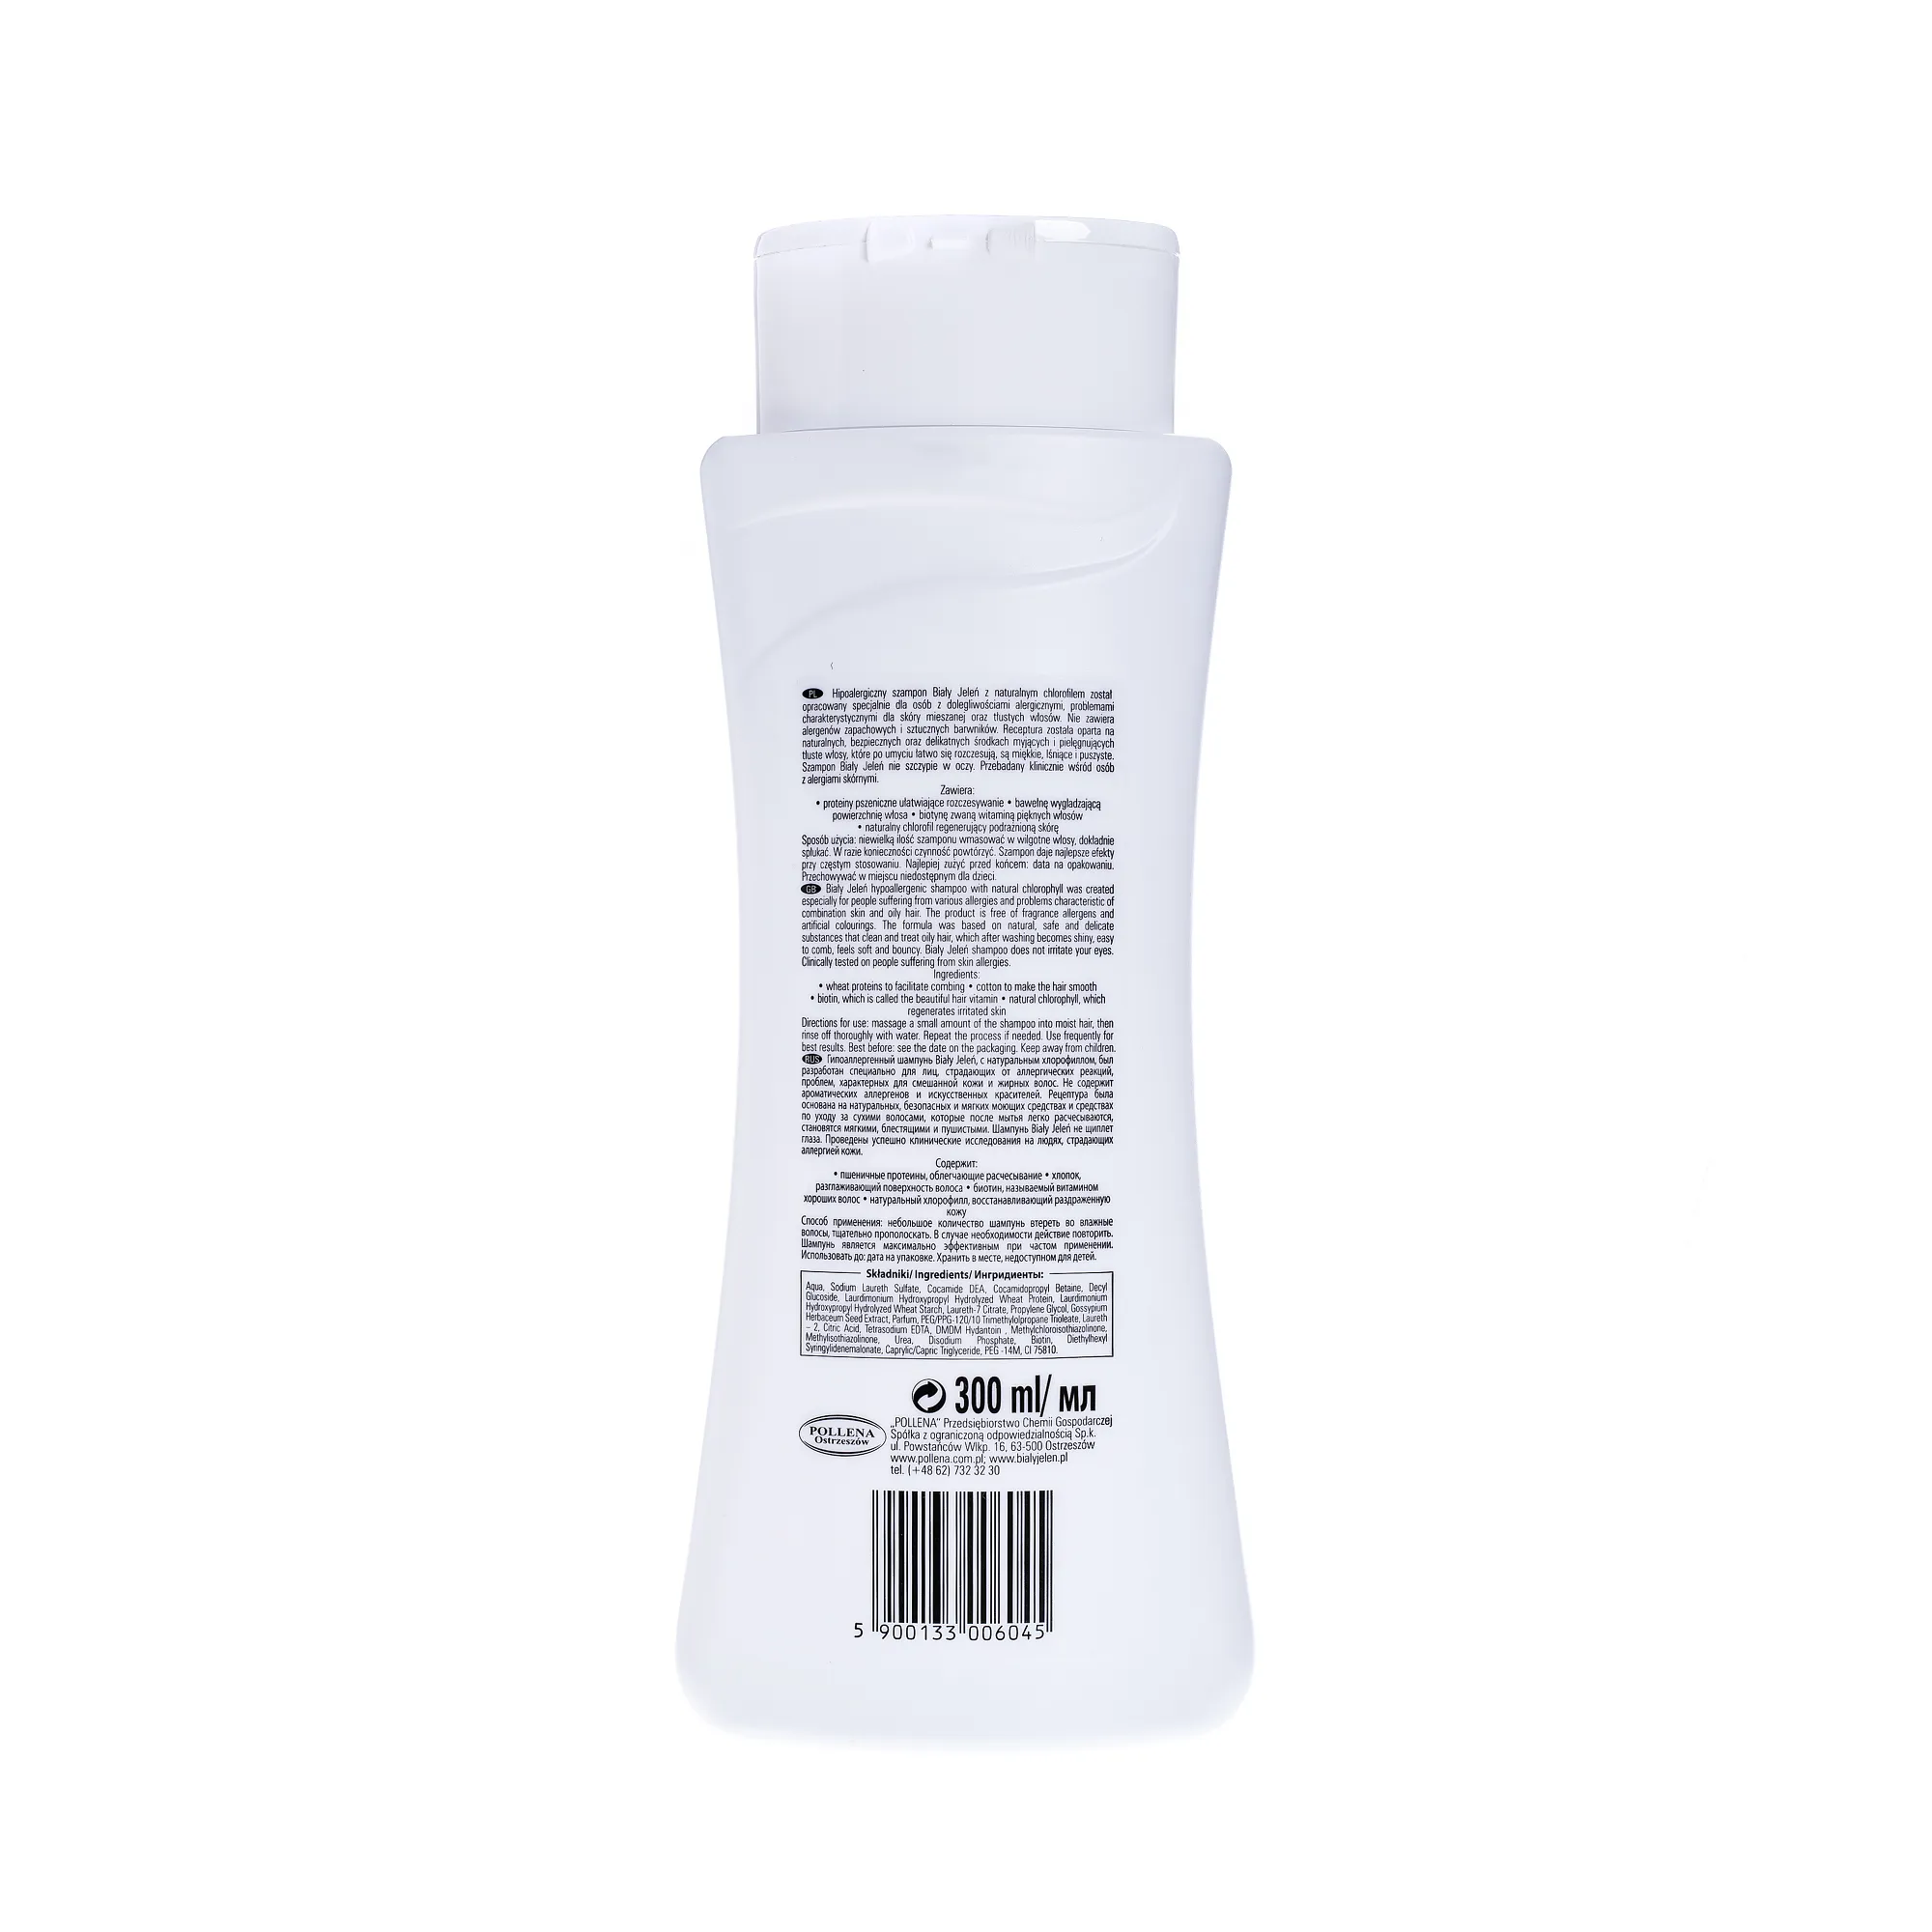 Biały Jeleń, hipoalergiczny szampon do włosów, chlorofill, 300 ml 